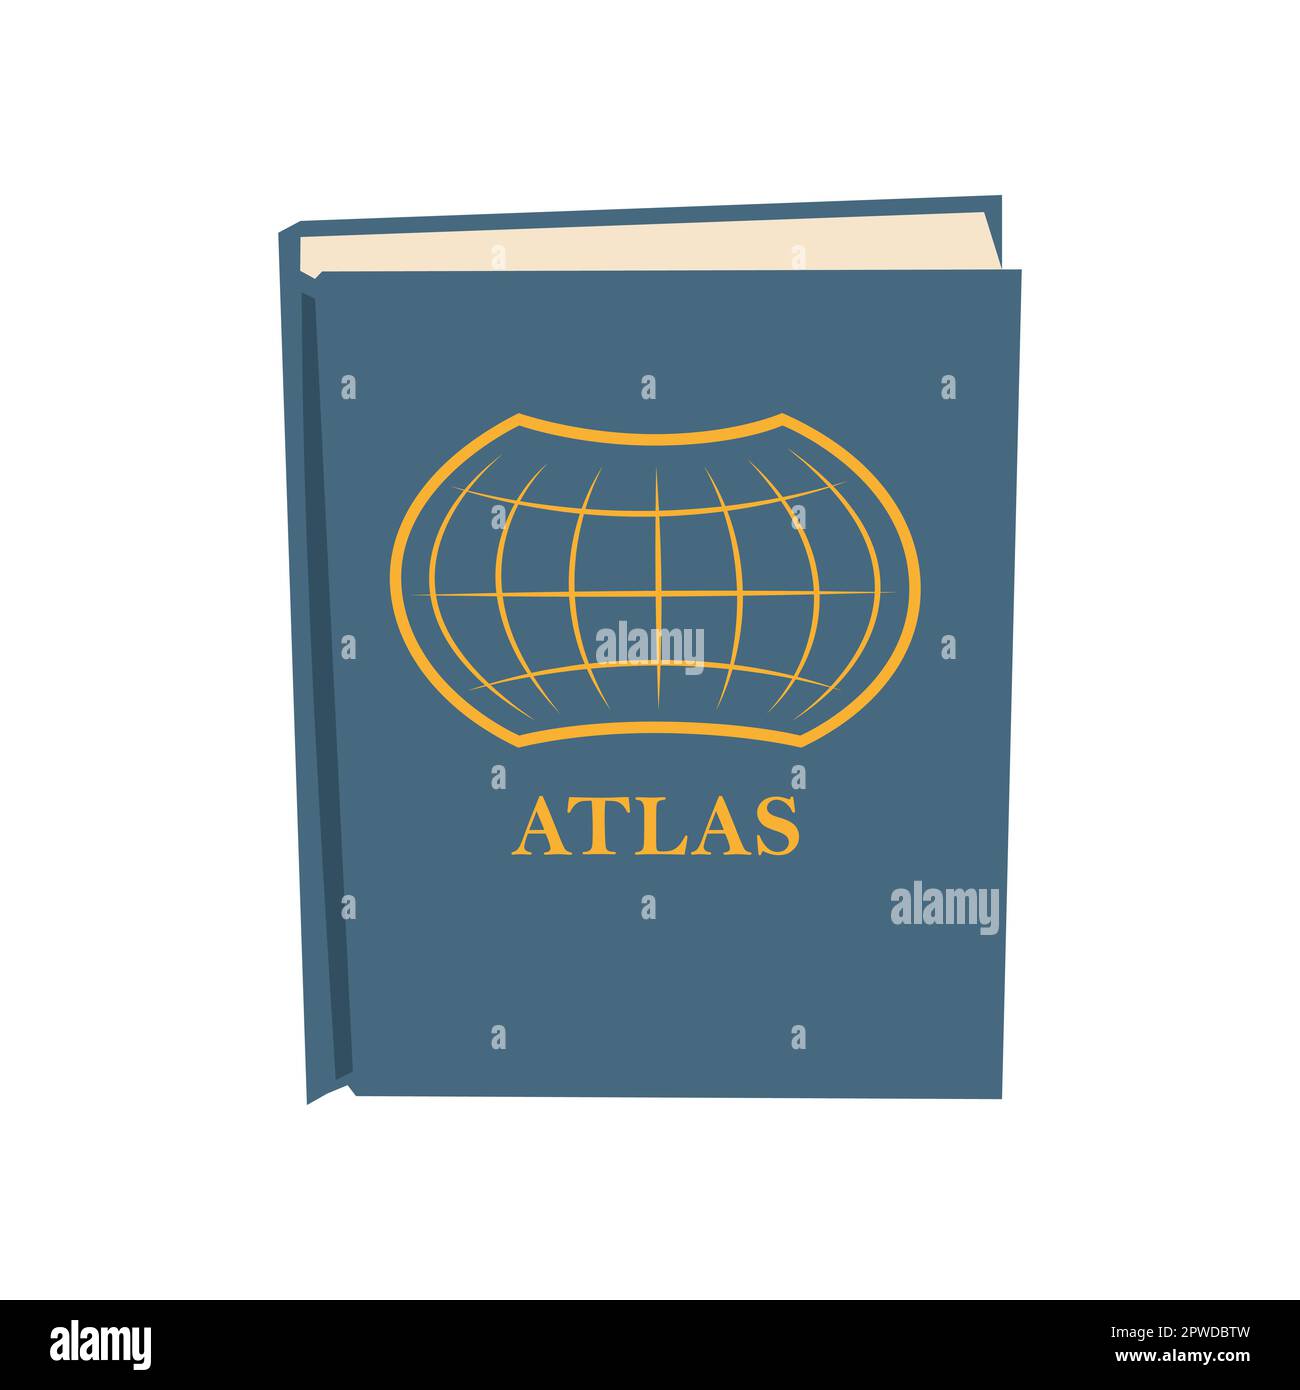 Atlas cartoon illustration Stock Vector